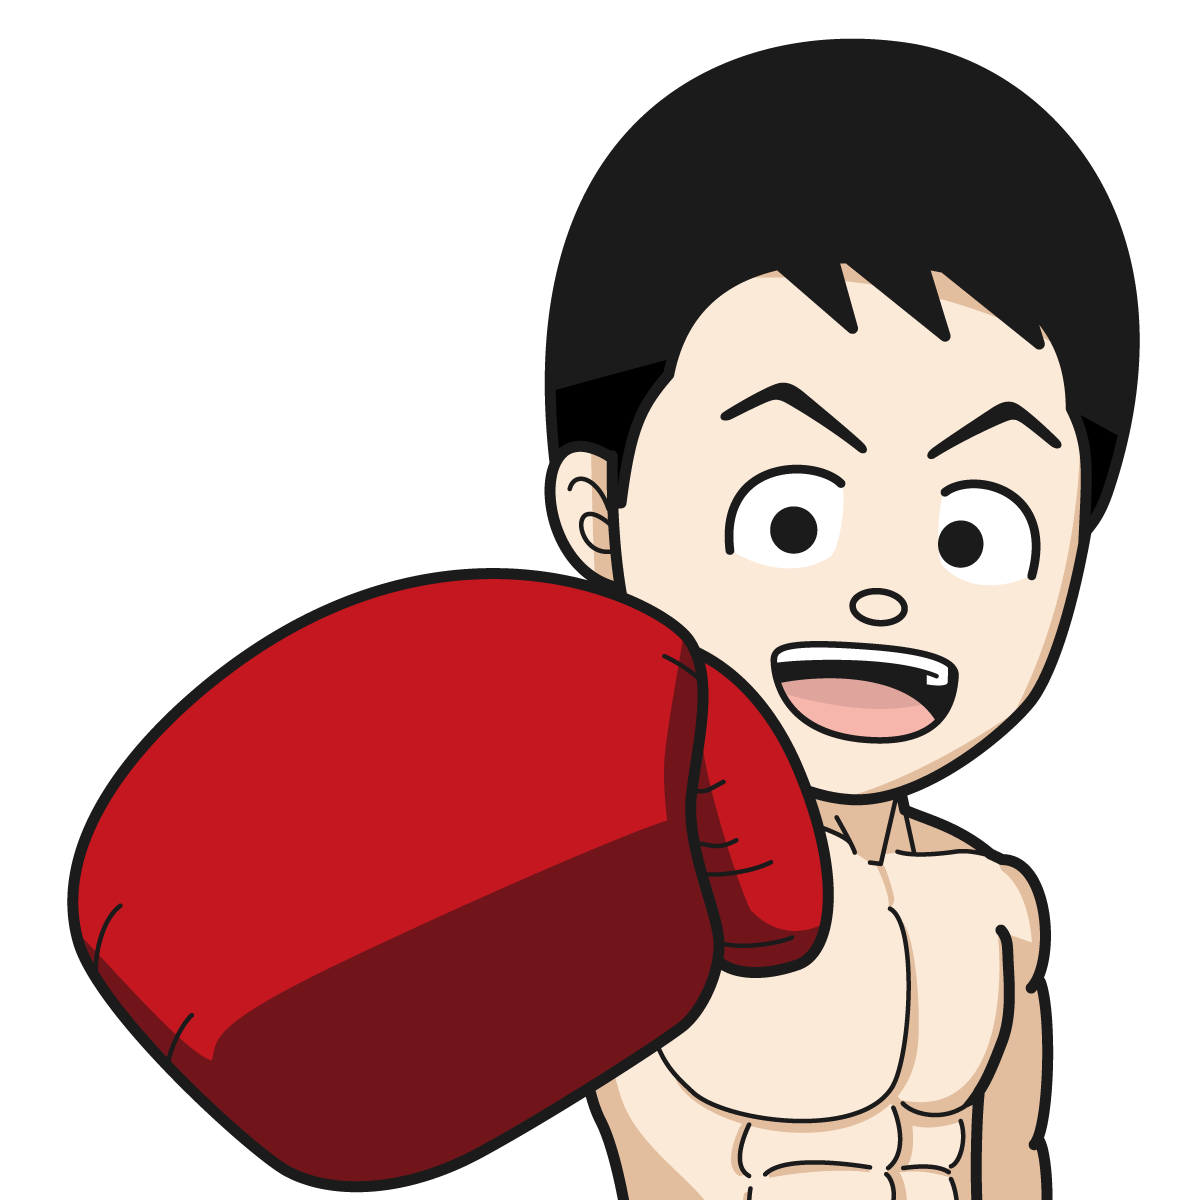 ボクシングをするマッチョな裸姿の男性61_item_イラスト